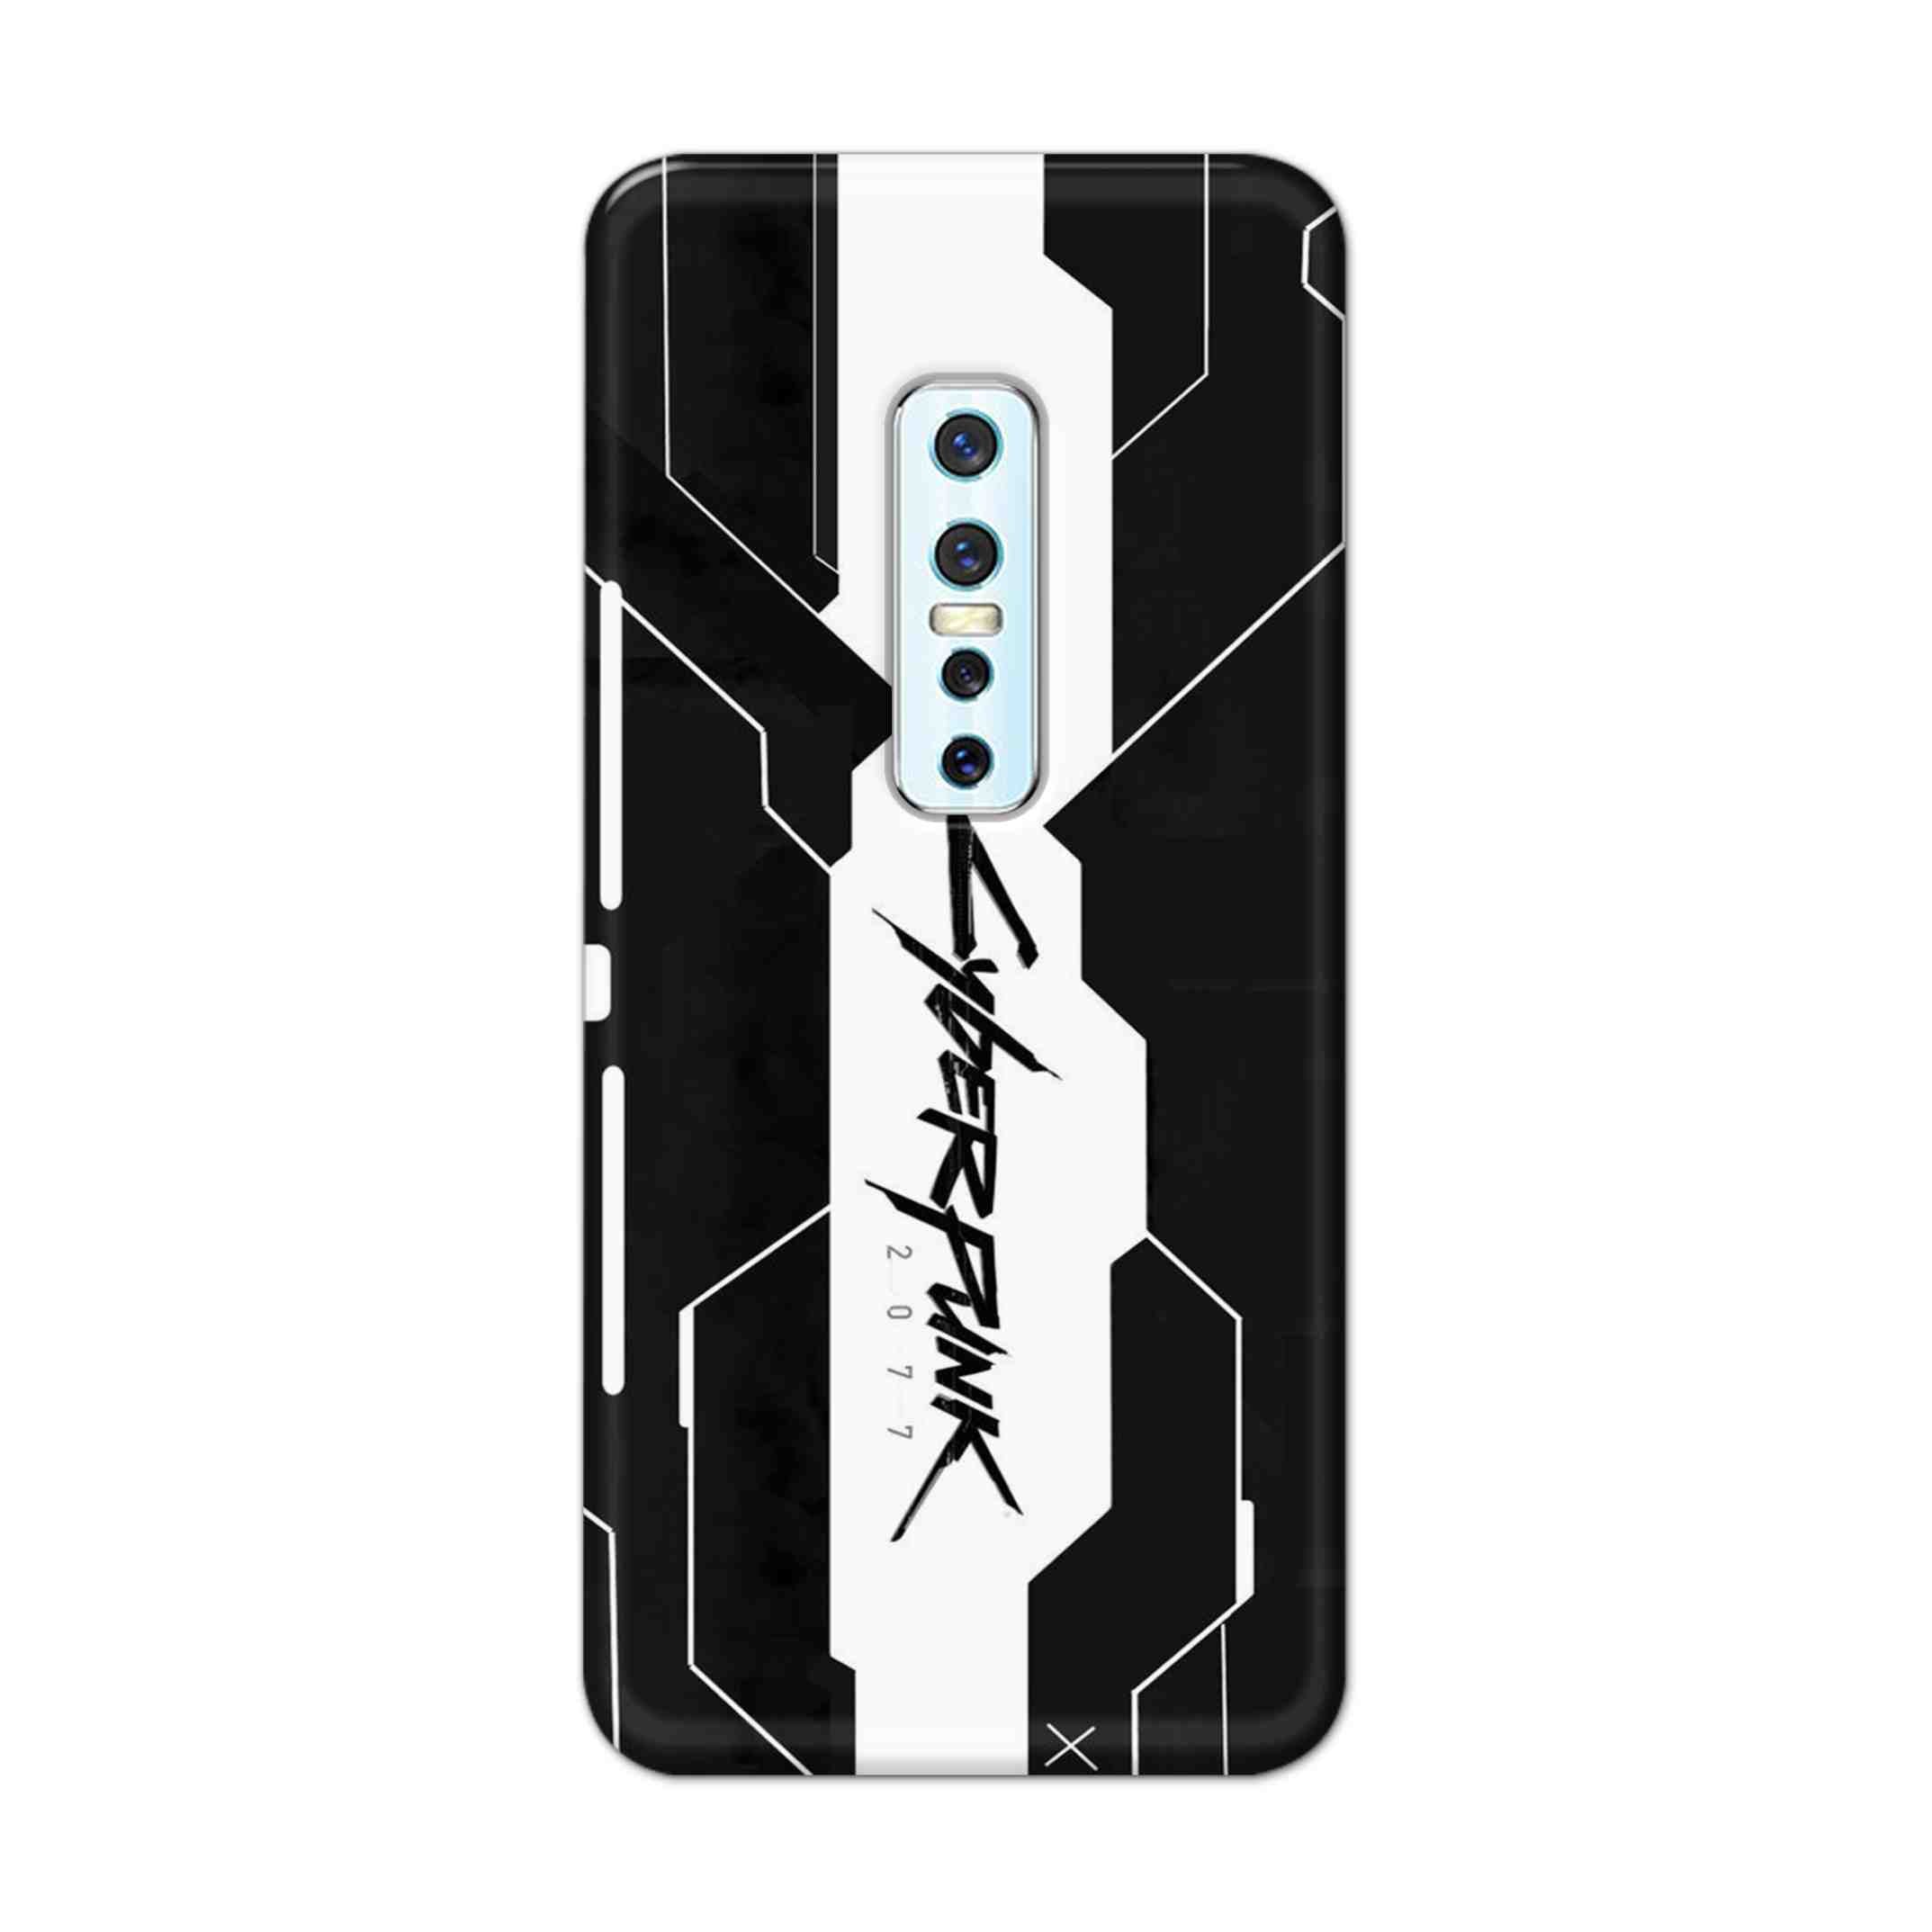 Buy Cyberpunk 2077 Art Hard Back Mobile Phone Case Cover For Vivo V17 Pro Online